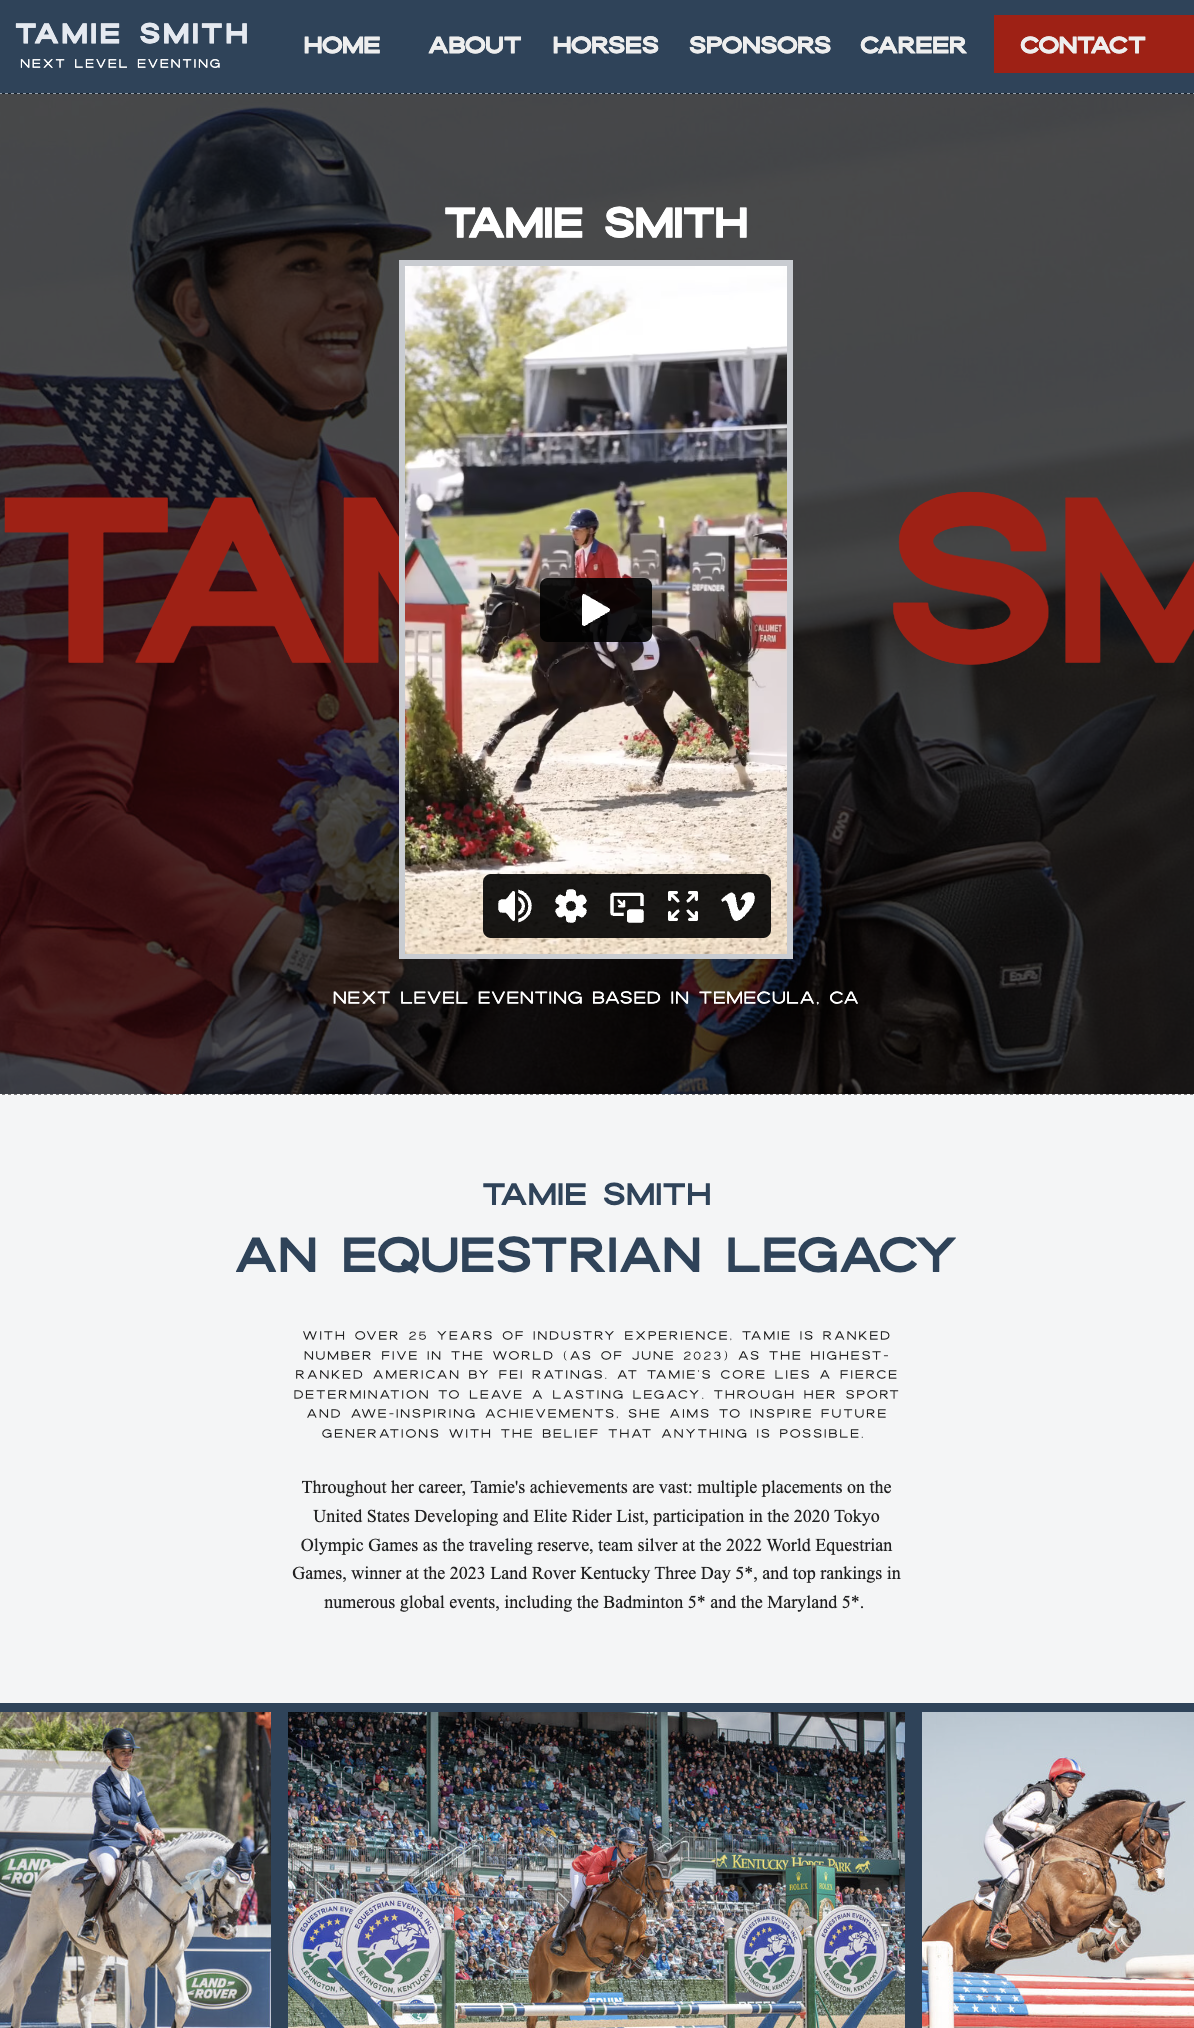 Tamie Smith website design by Farm & Fir Co.